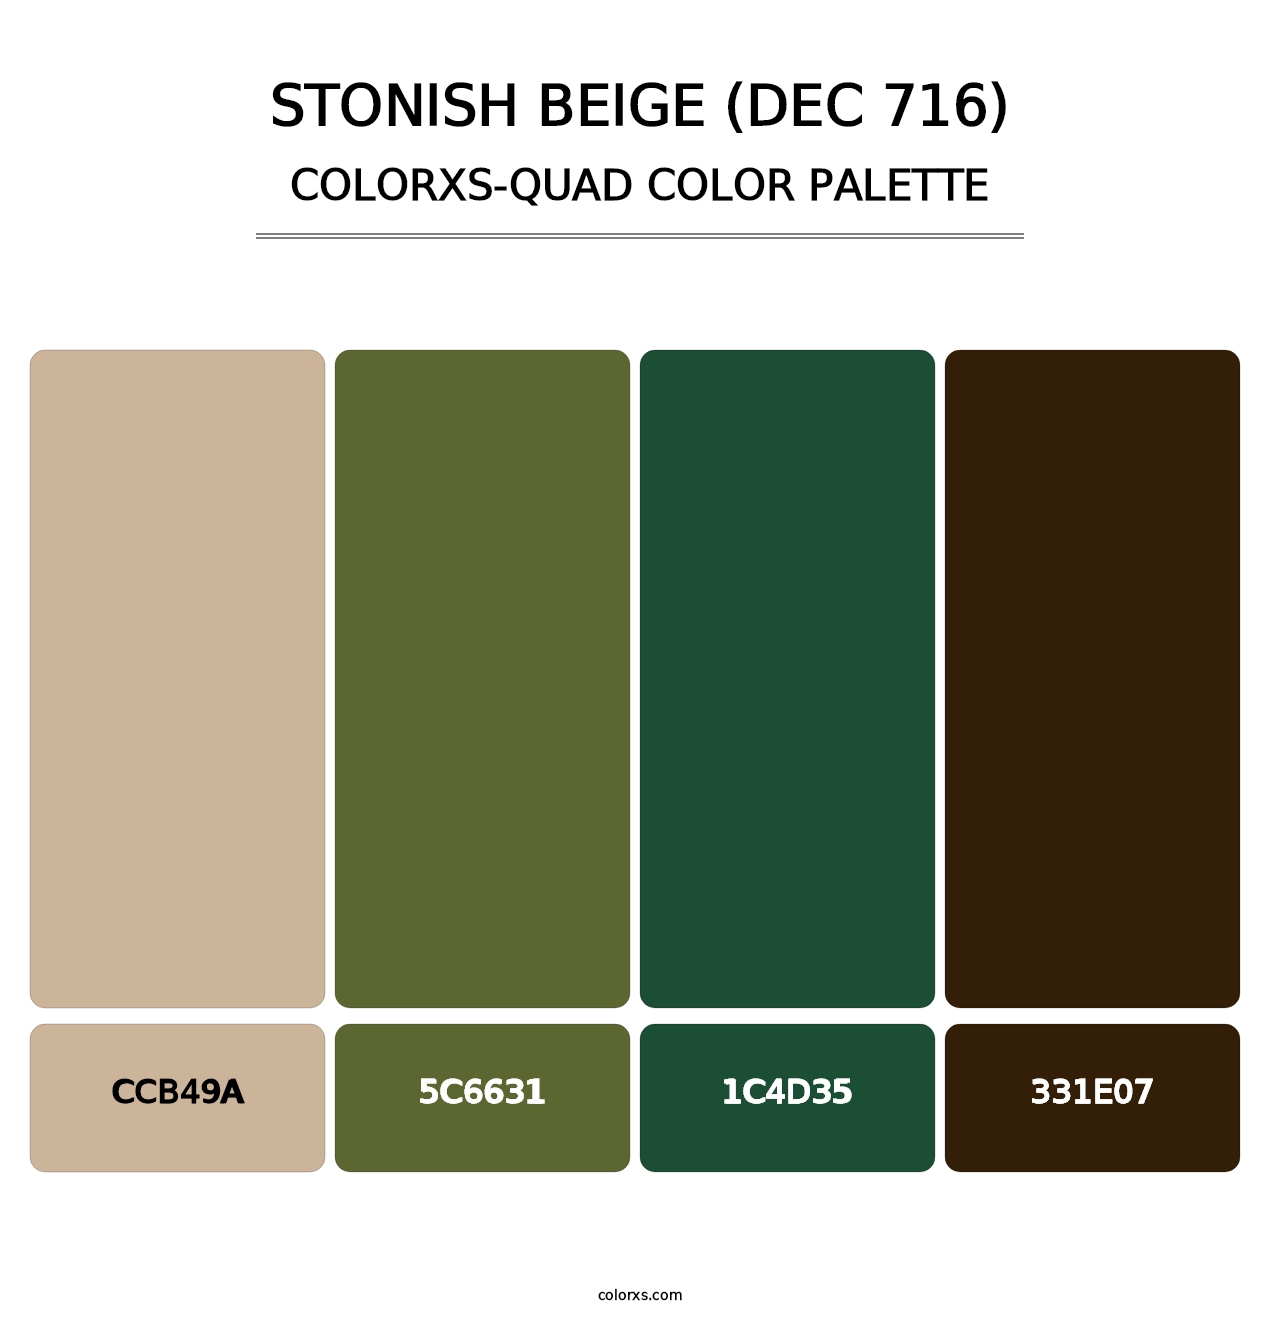 Stonish Beige (DEC 716) - Colorxs Quad Palette